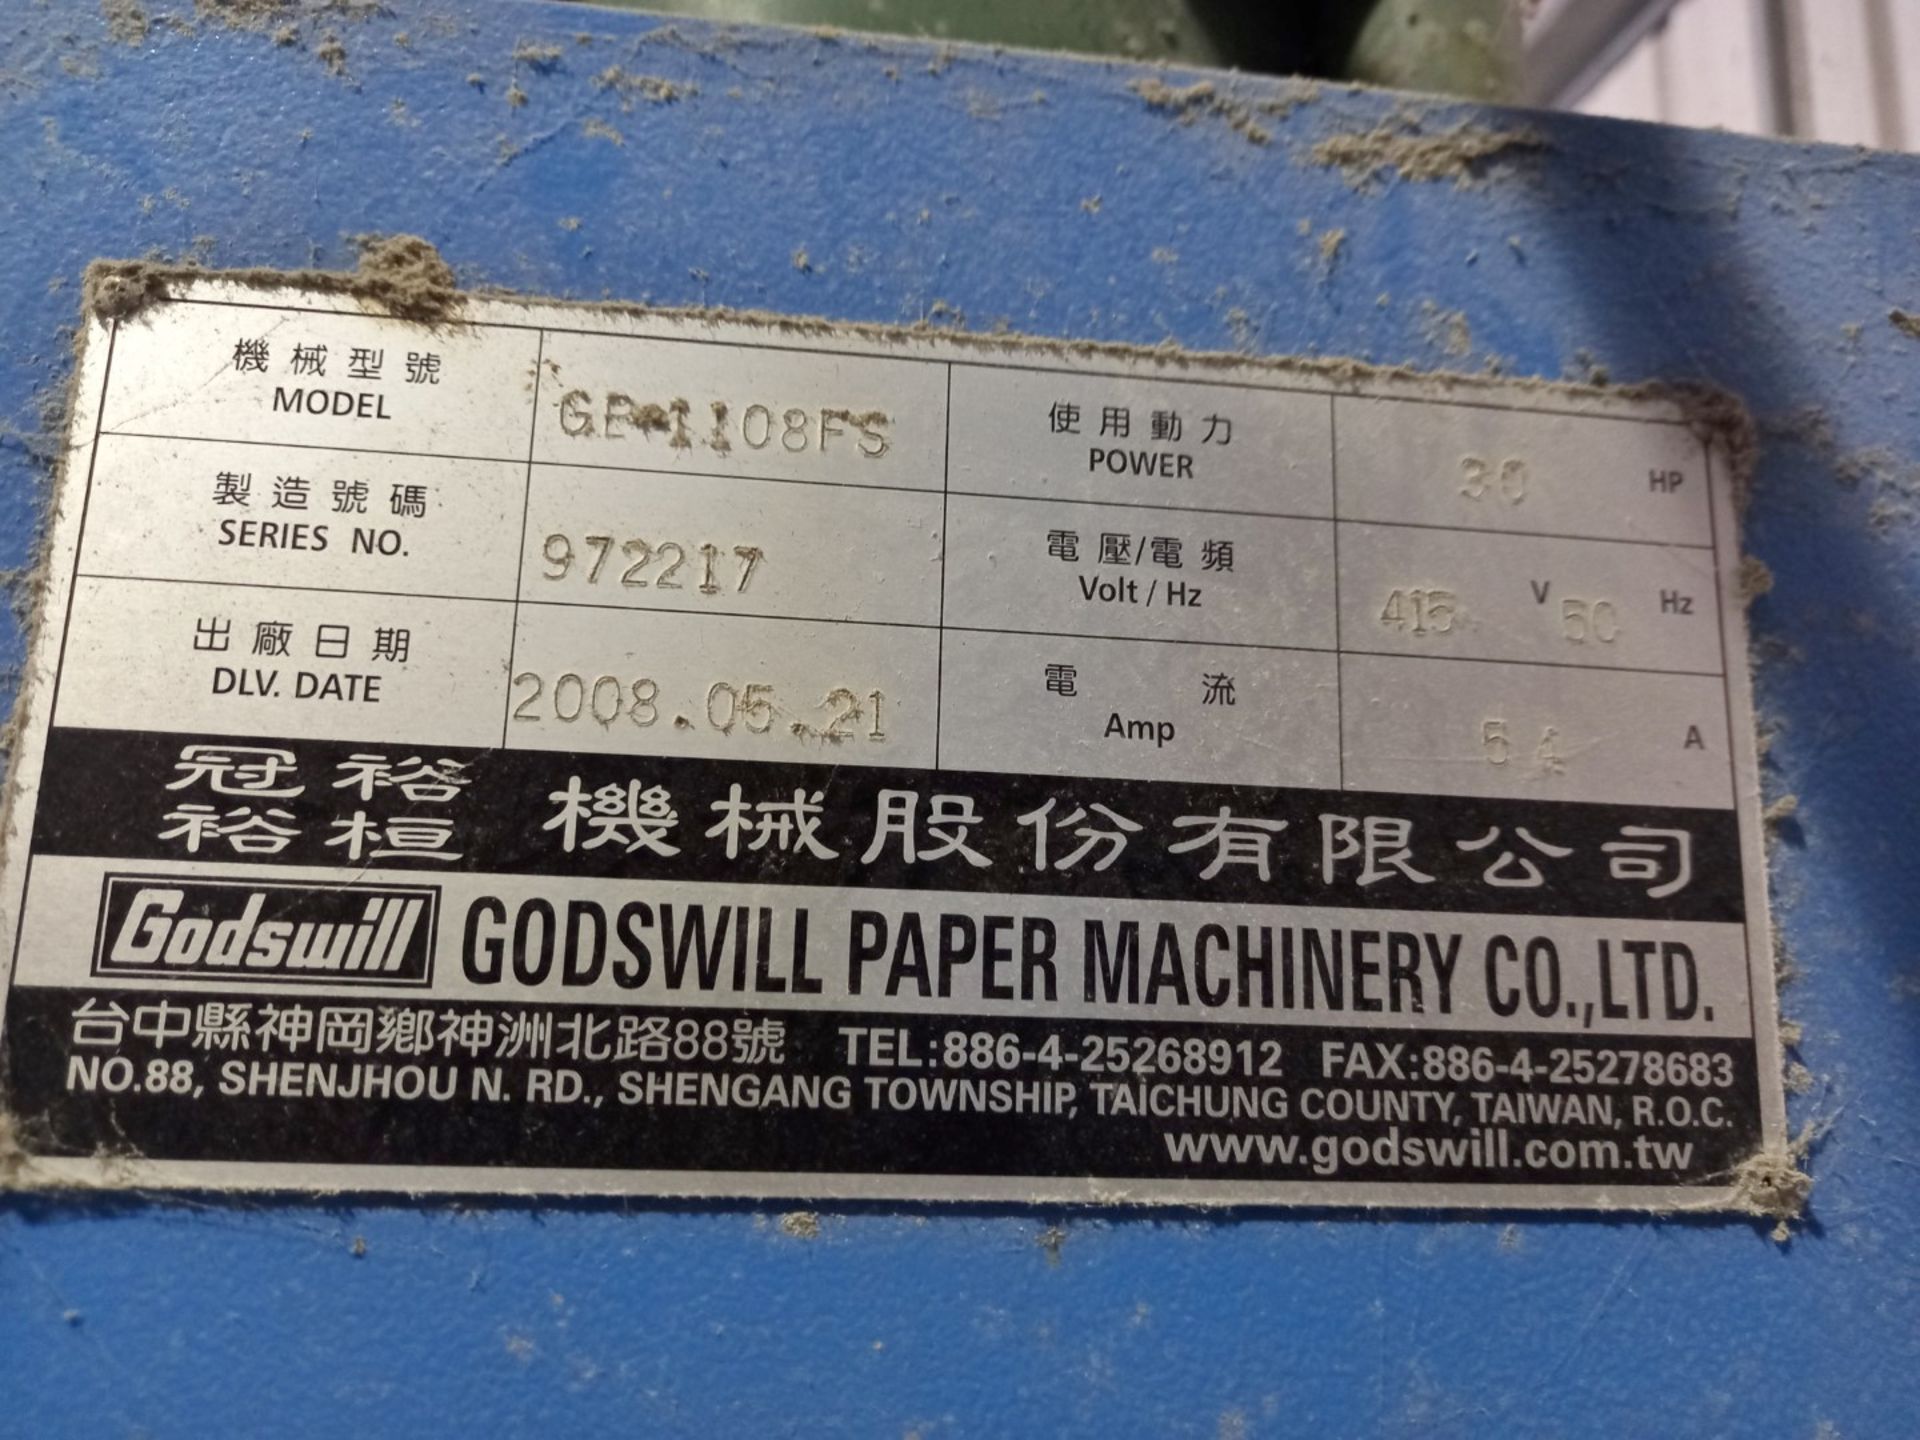 Godswill GB-1108FS Automatic Baling Press - 4 Way - Image 14 of 15